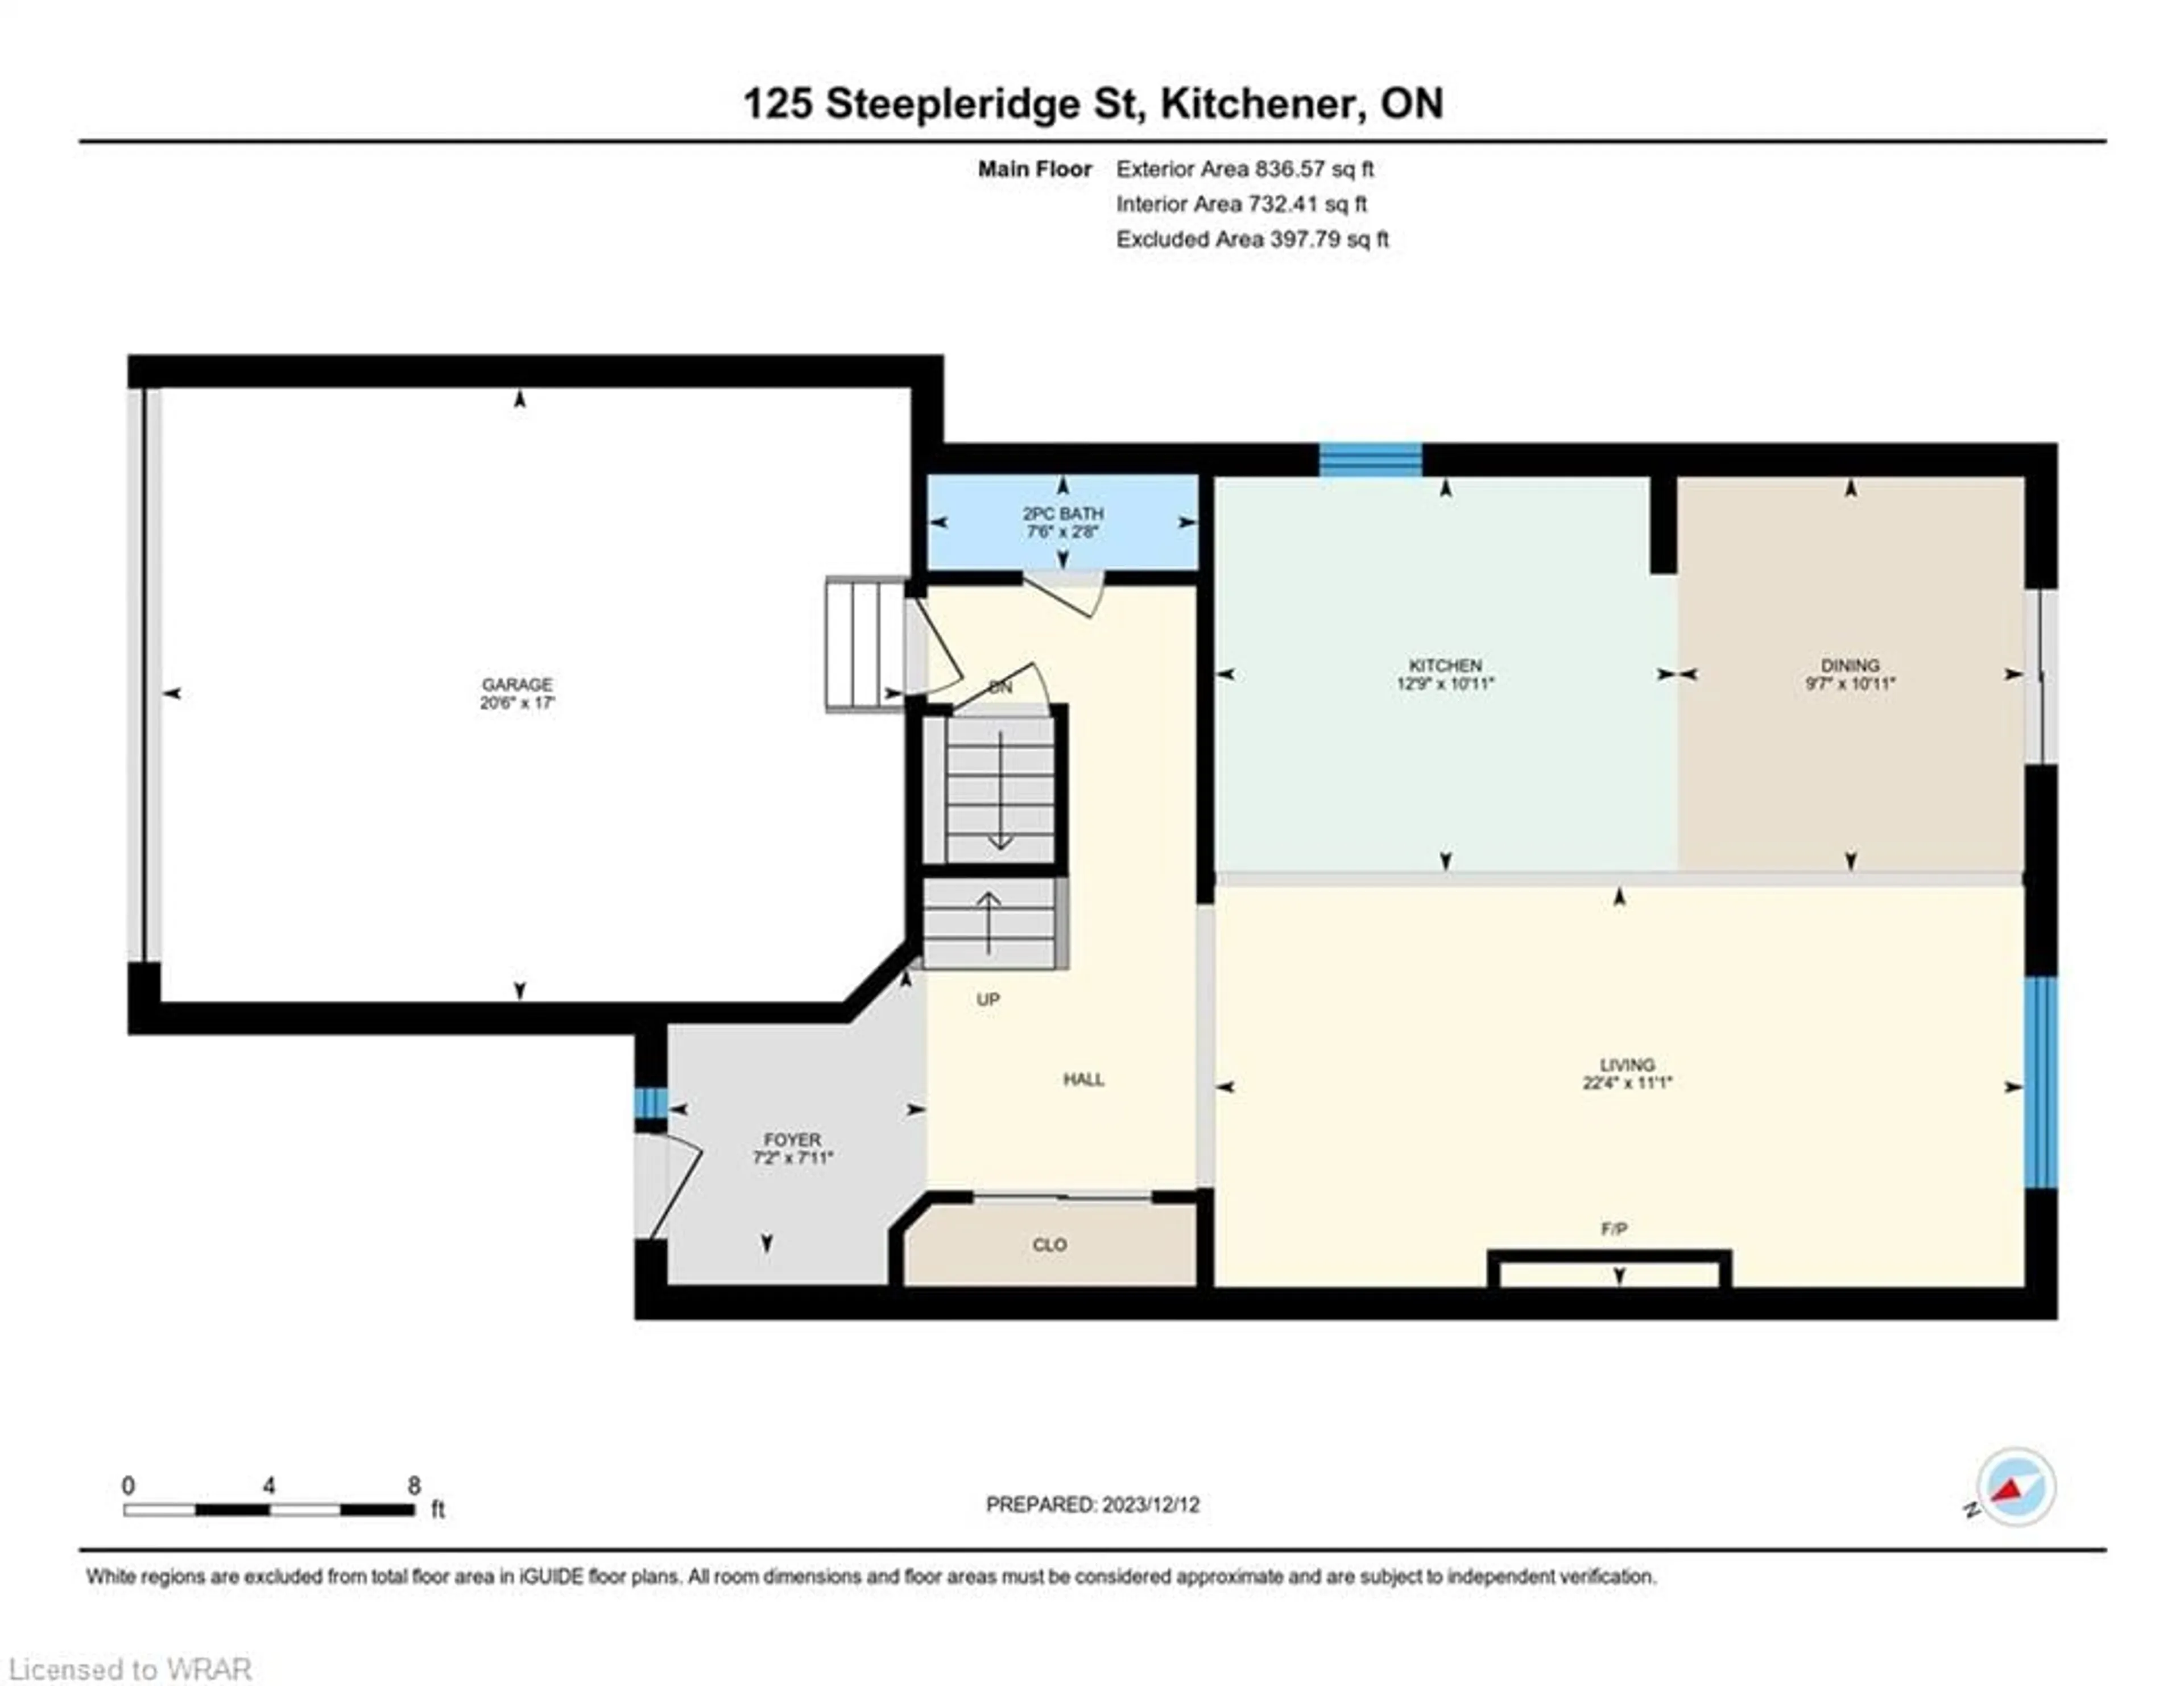 Floor plan for 125 Steepleridge St, Kitchener Ontario N2P 2W2